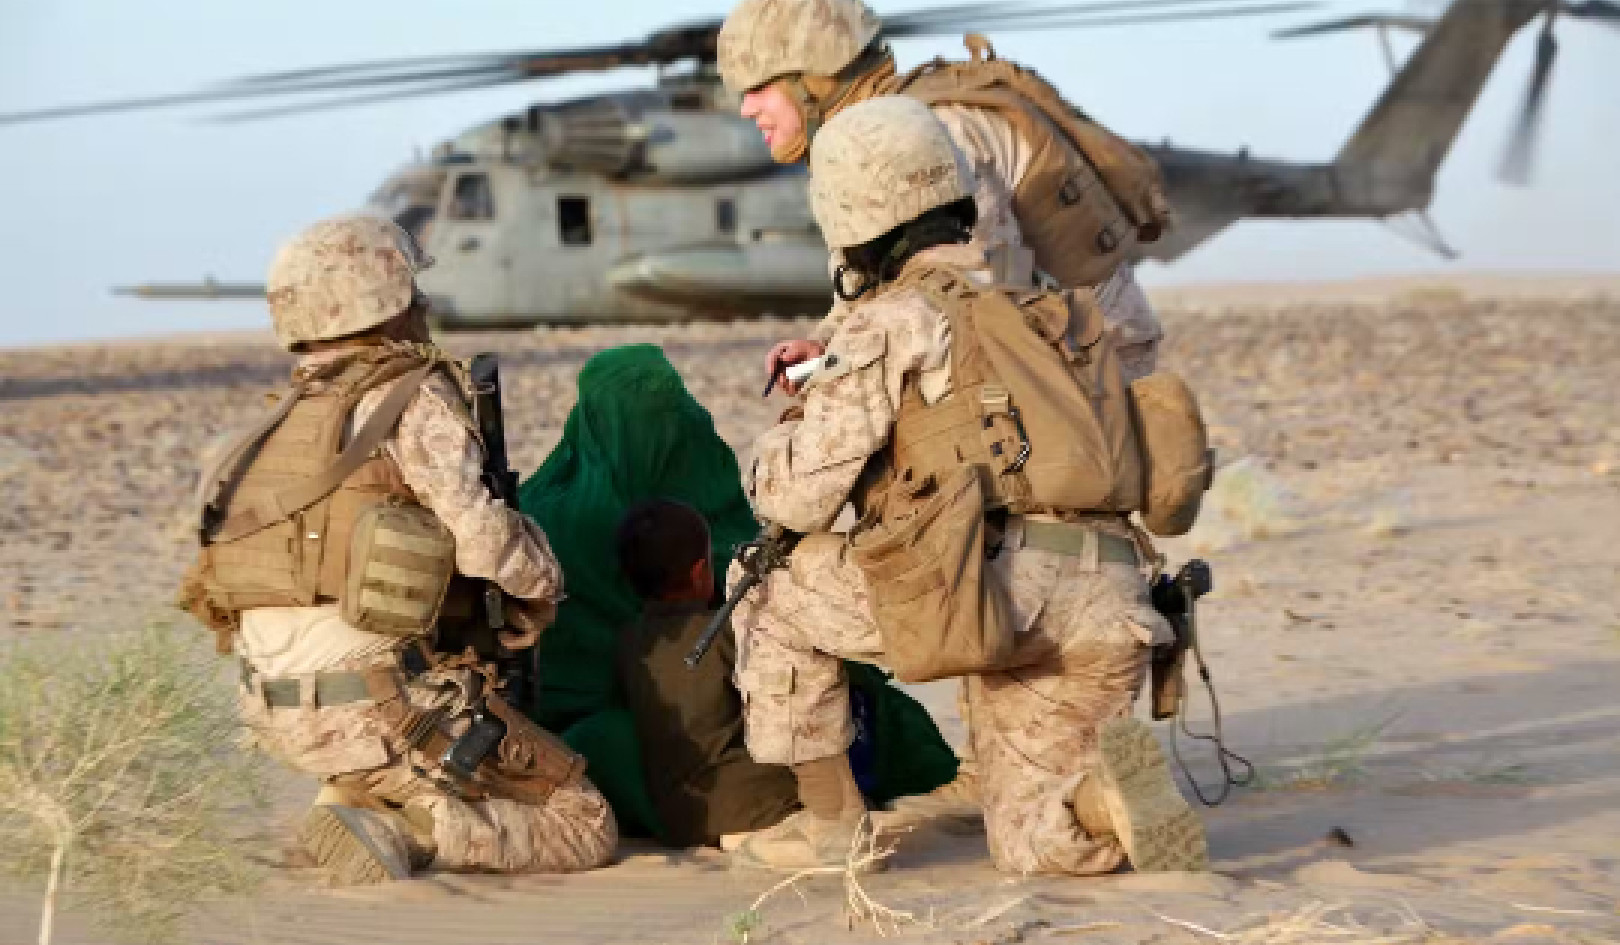 La storia interna di come le forze armate statunitensi hanno inviato soldati donne in missioni di combattimento segrete in Afghanistan